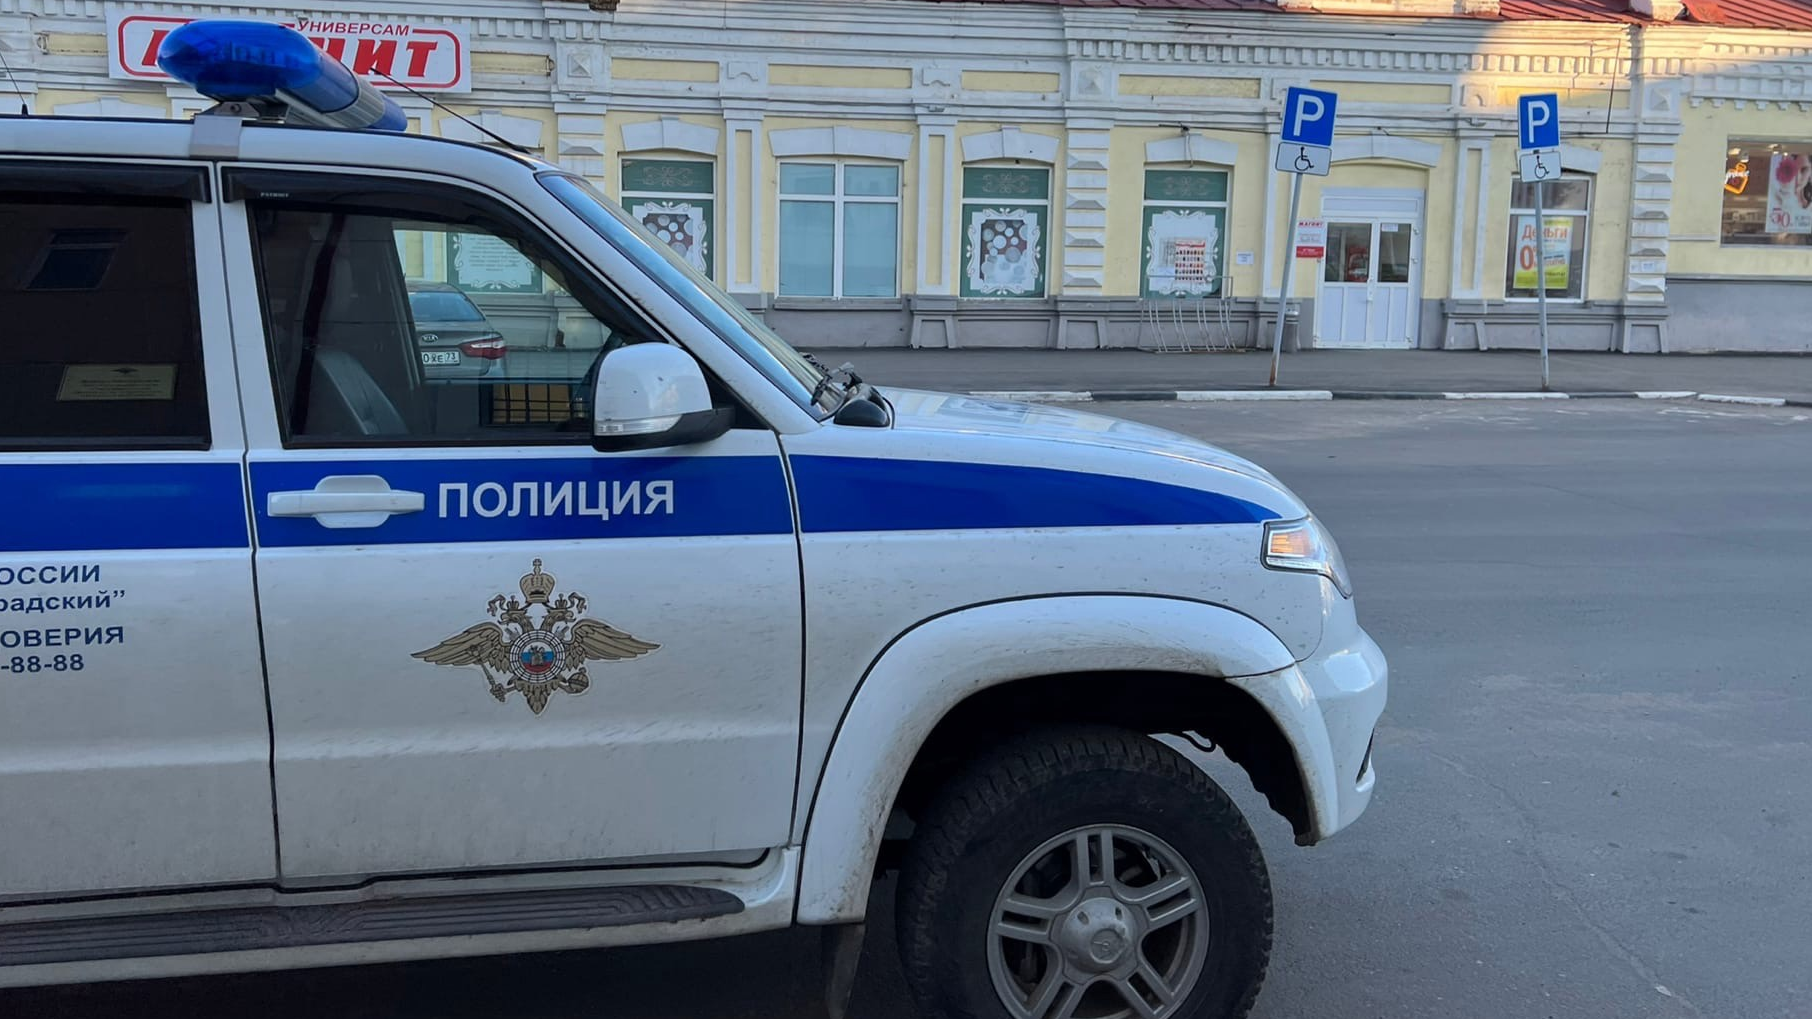 30-летний житель Ульяновской области предстанет перед судом за изнасилование девушки в людном месте